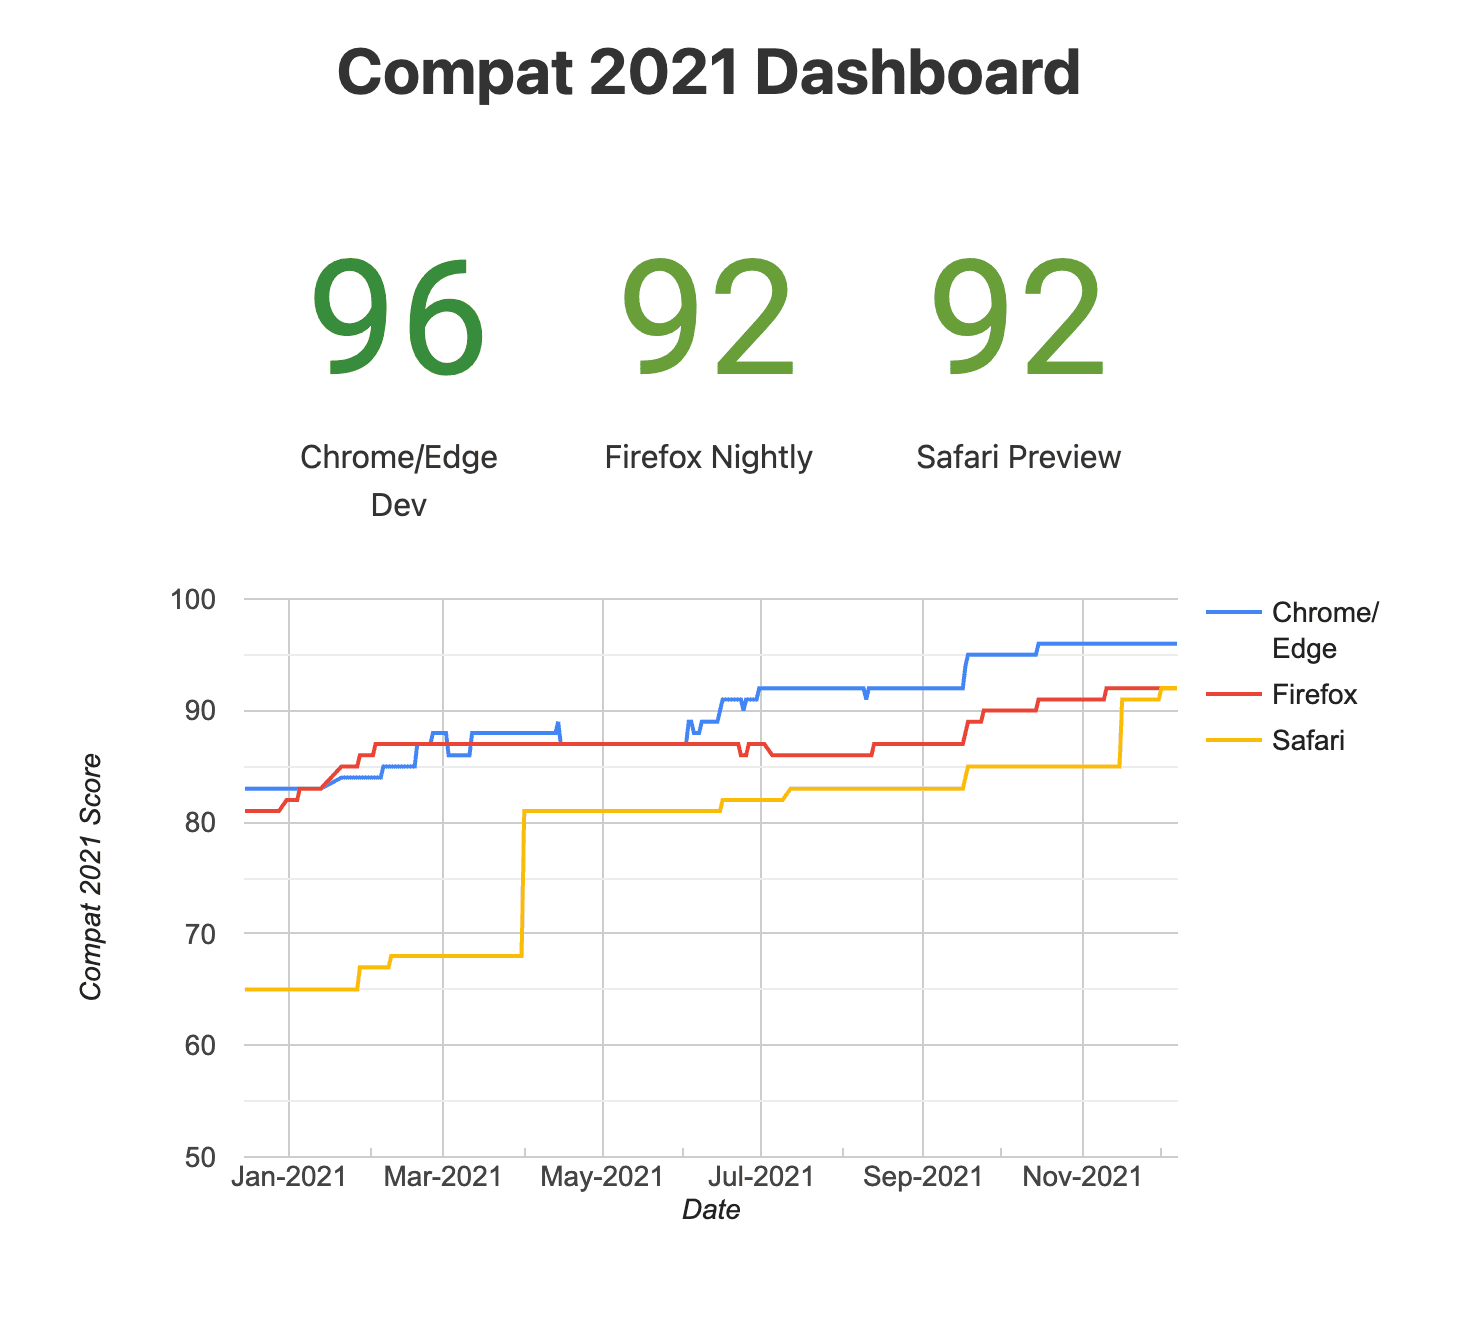 Compat 2021 डैशबोर्ड का स्नैपशॉट (एक्सपेरिमेंट के तौर पर उपलब्ध ब्राउज़र)